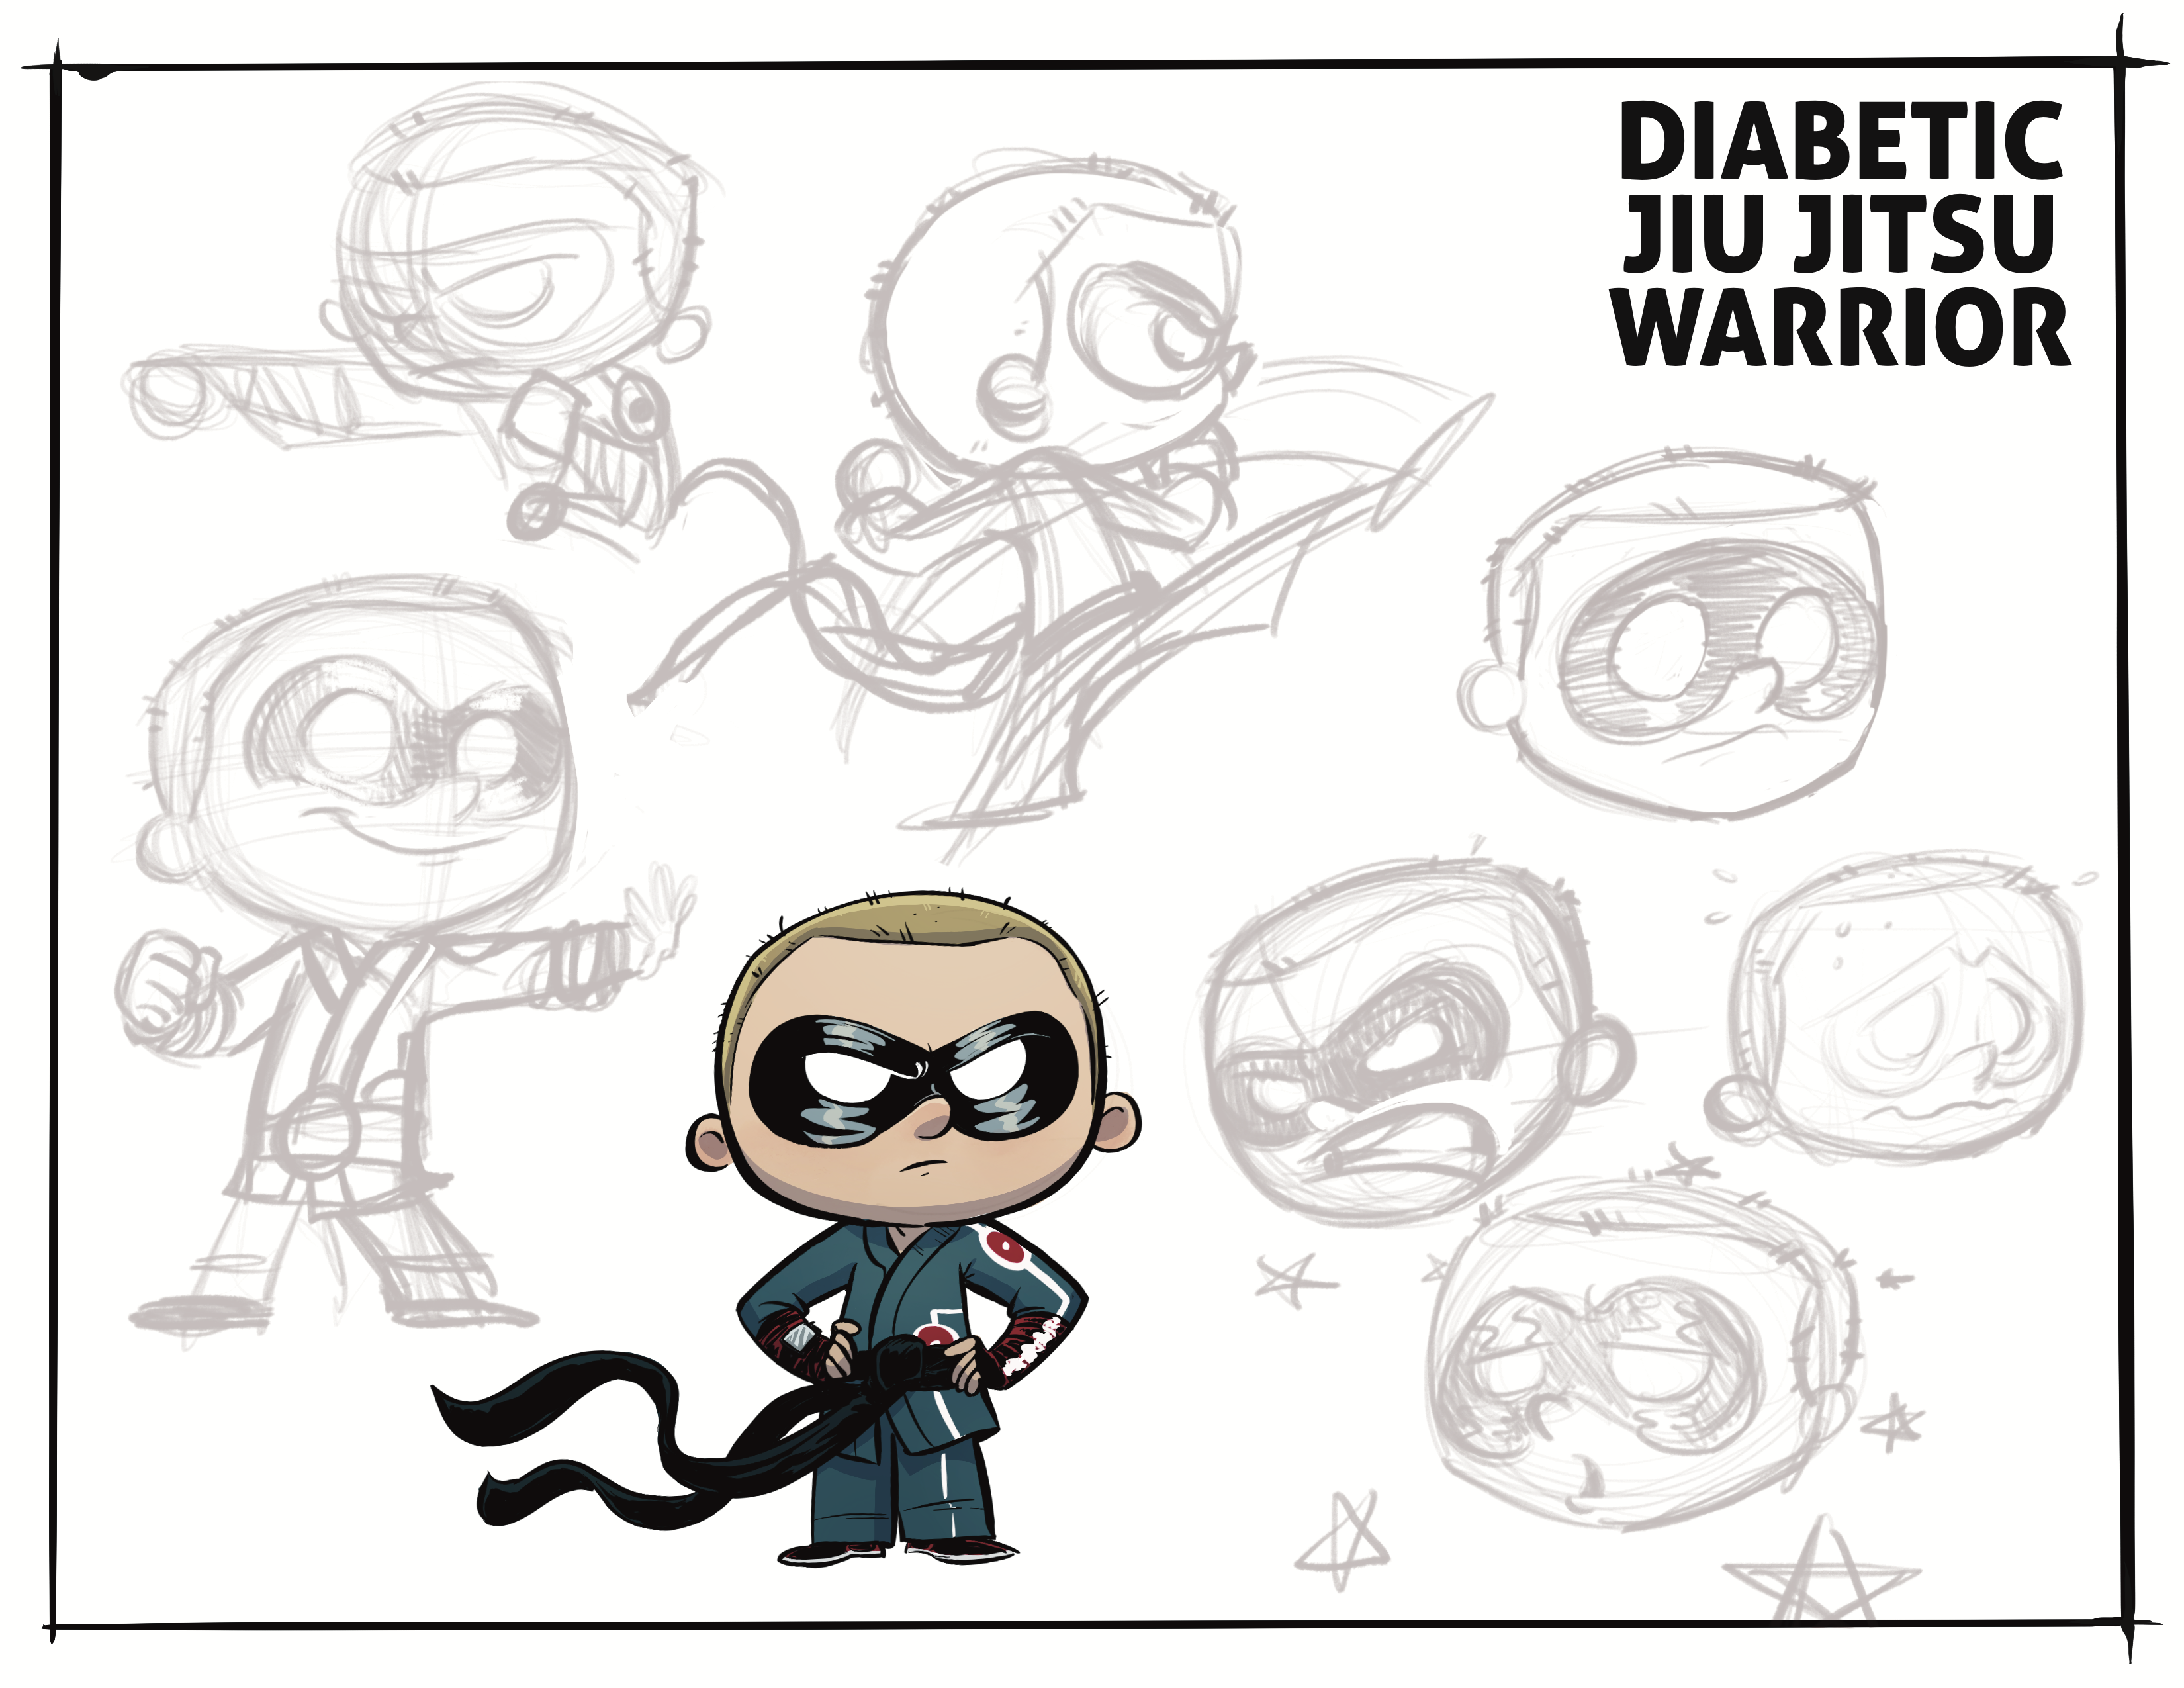 Diabetic Jiu Jitsu Warrior – Comic book